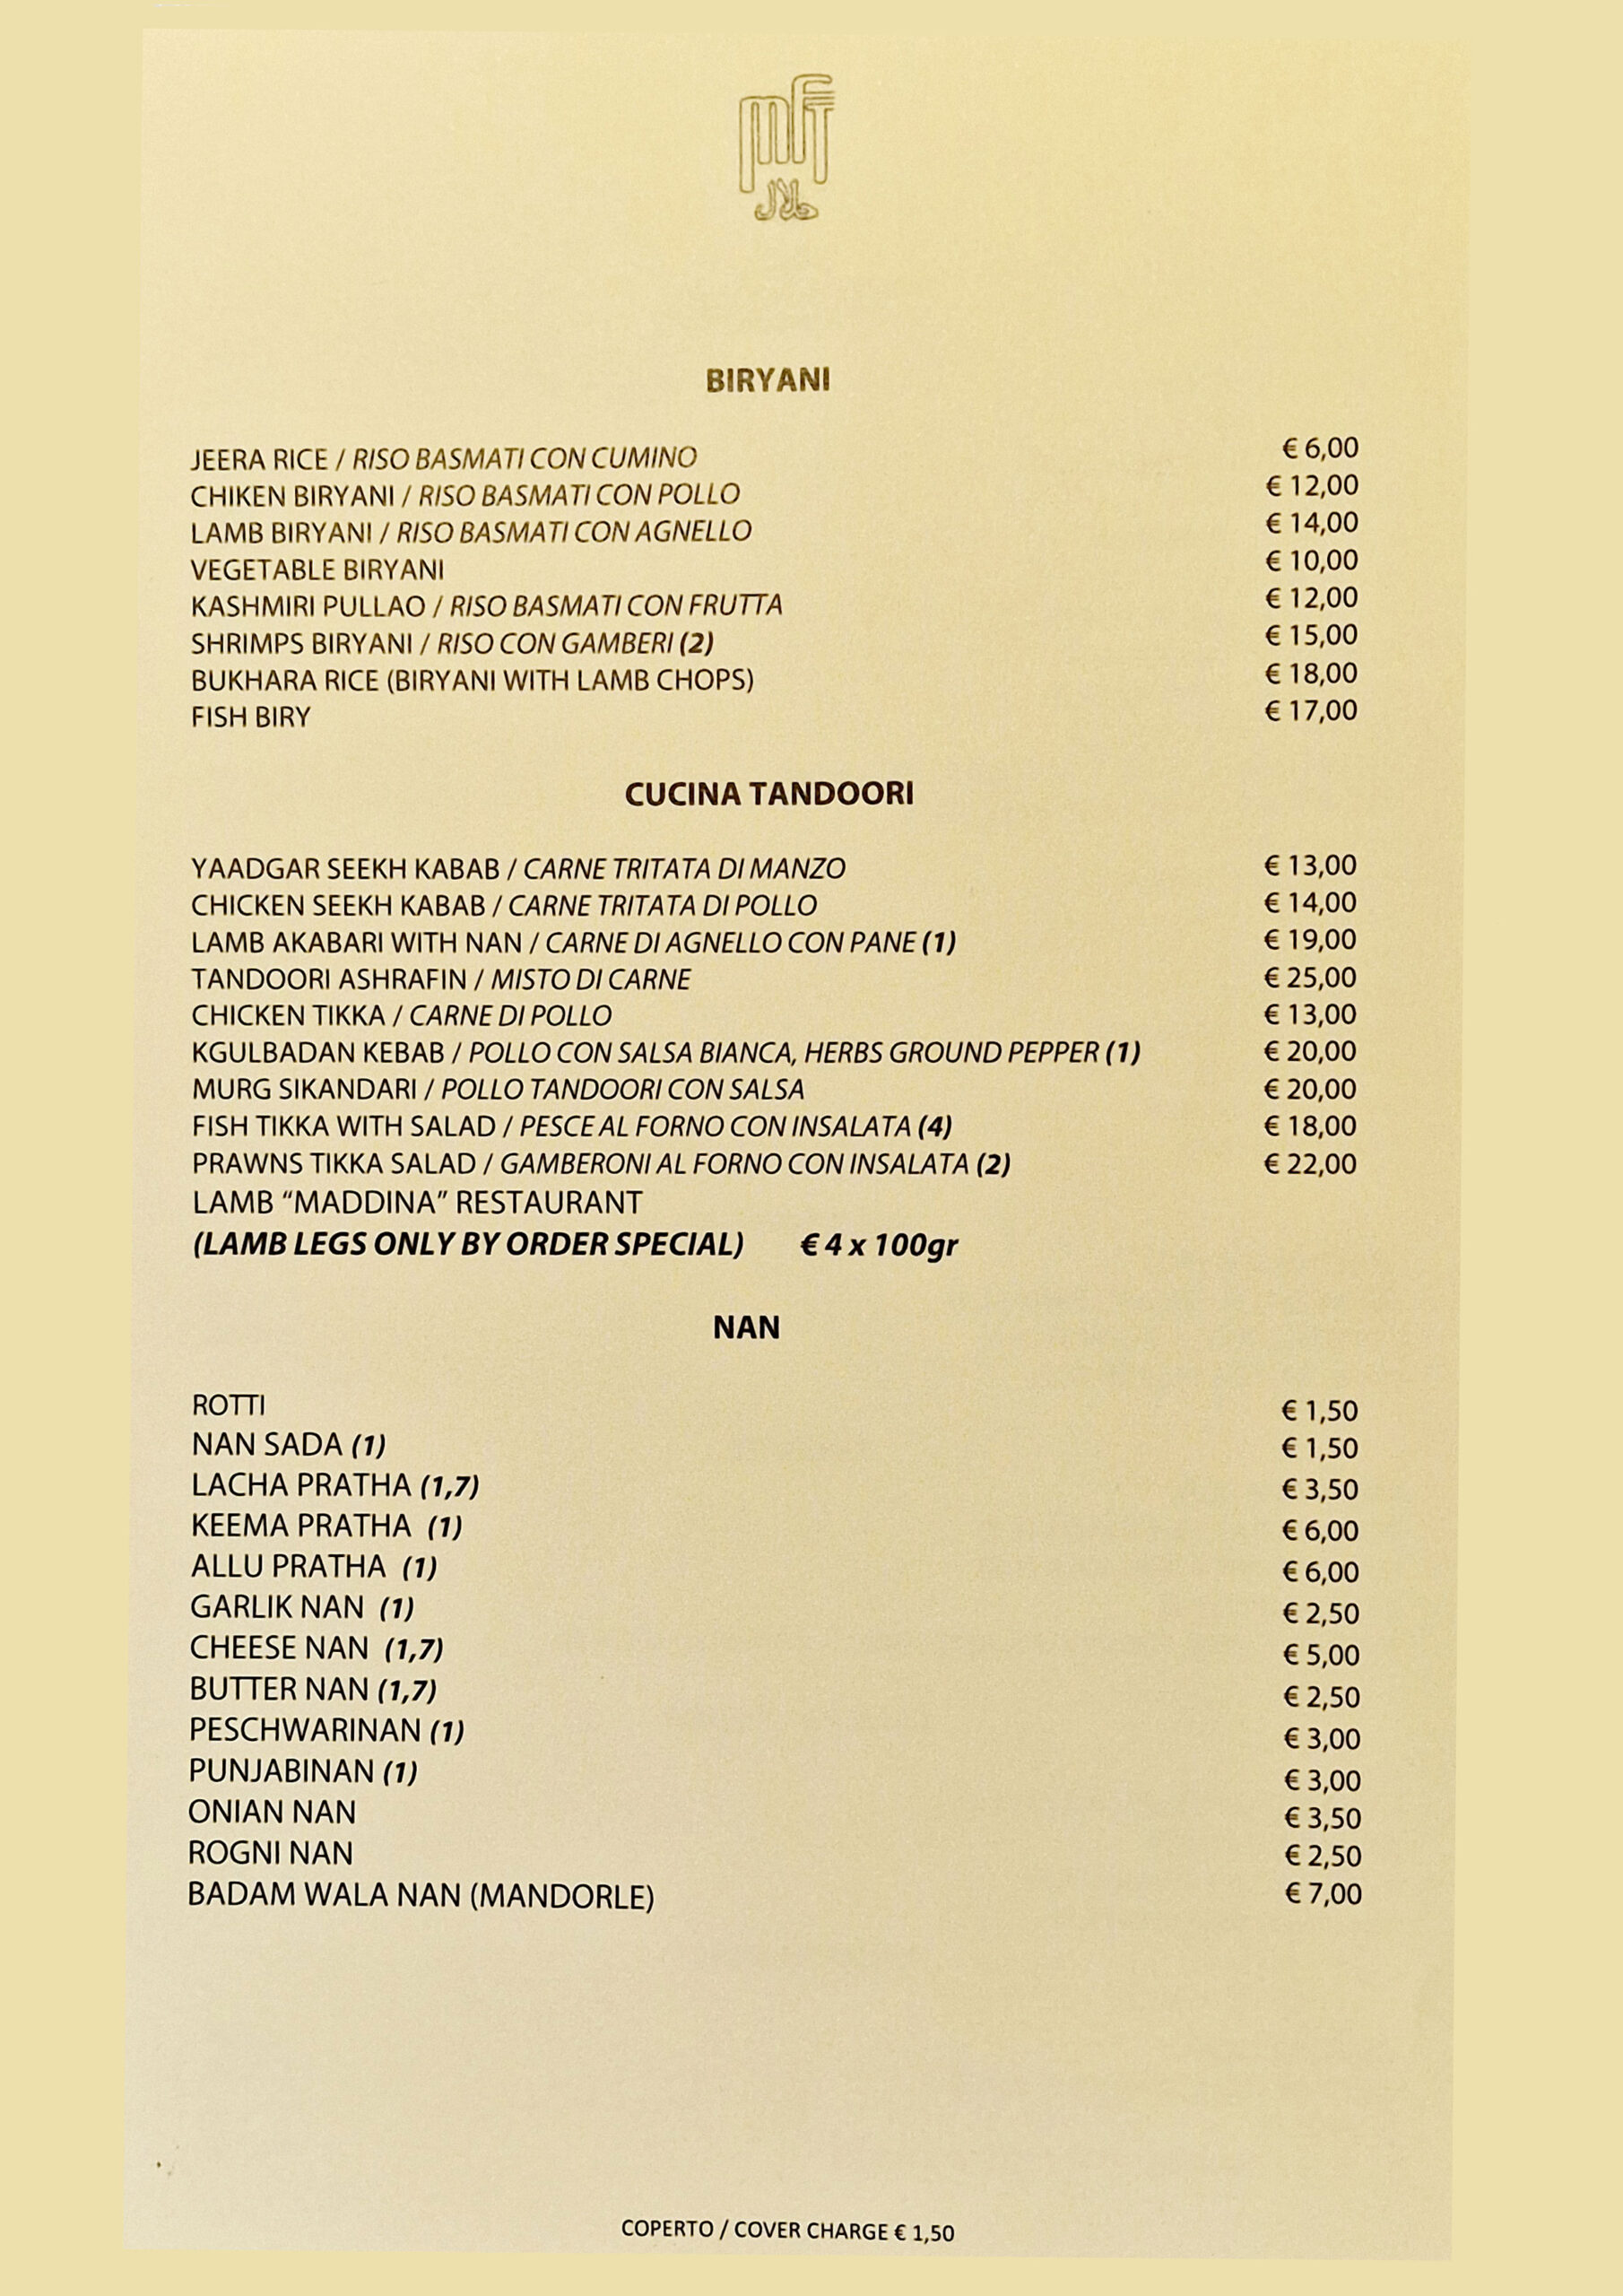 maddina florence tandoori restaurant menu